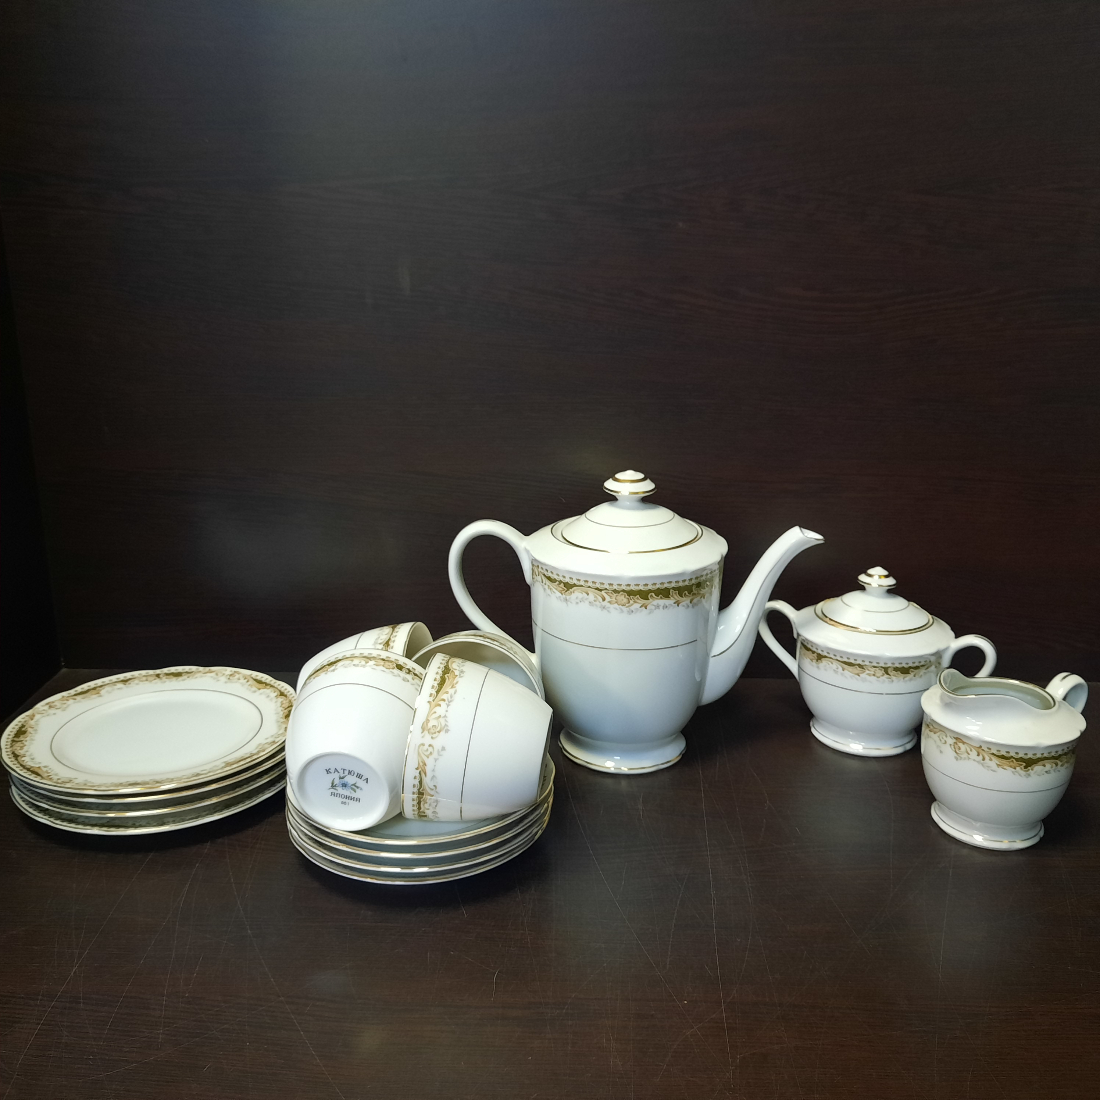 Сервиз чайный на 4 персоны, 15 предметов, фарфор "Катюша-Япония". Новый.. Картинка 1